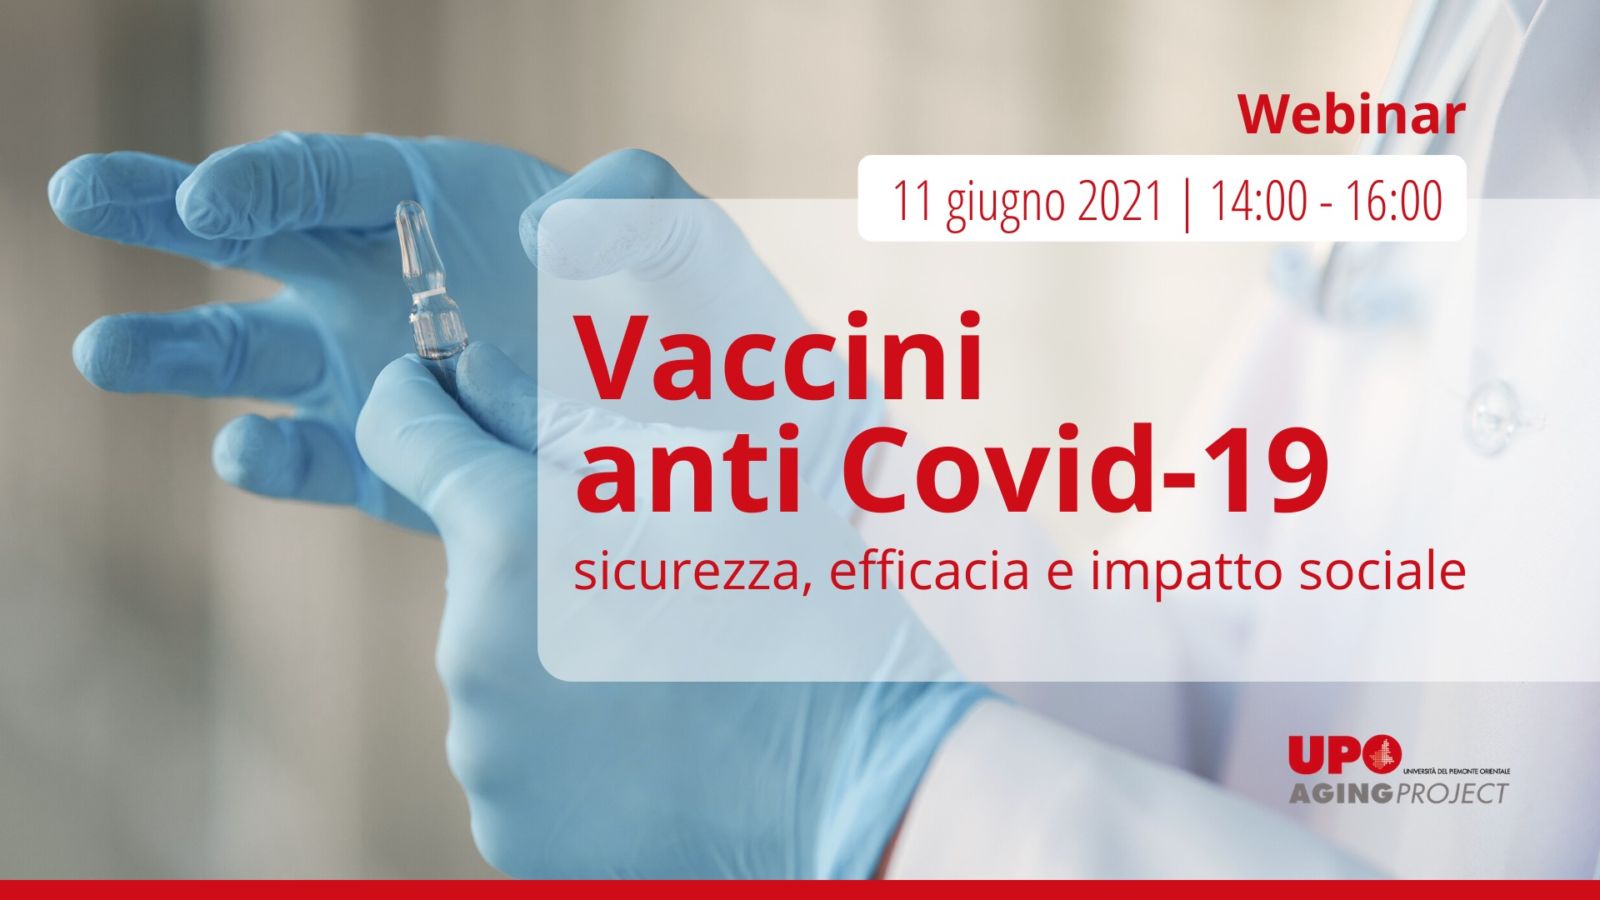 Vaccini anti Covid-19 - Webinar - Aging Project UniUPO